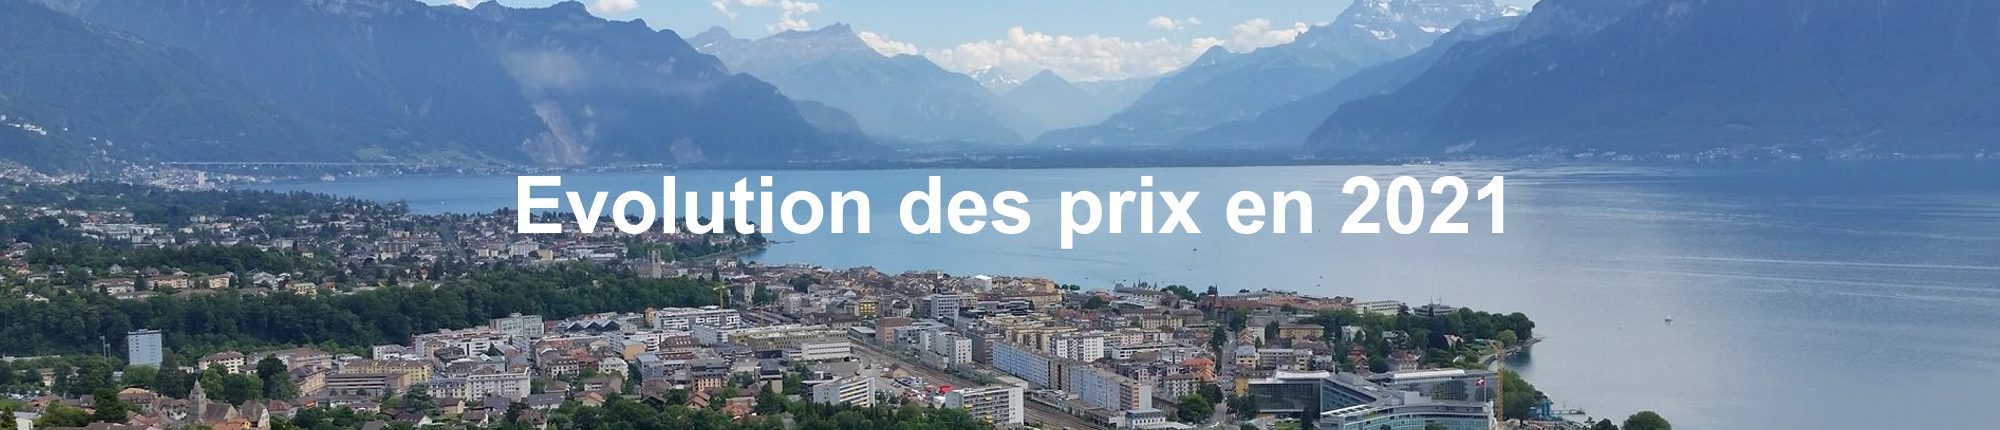 evolution prix m2 immobilier suisse 2021